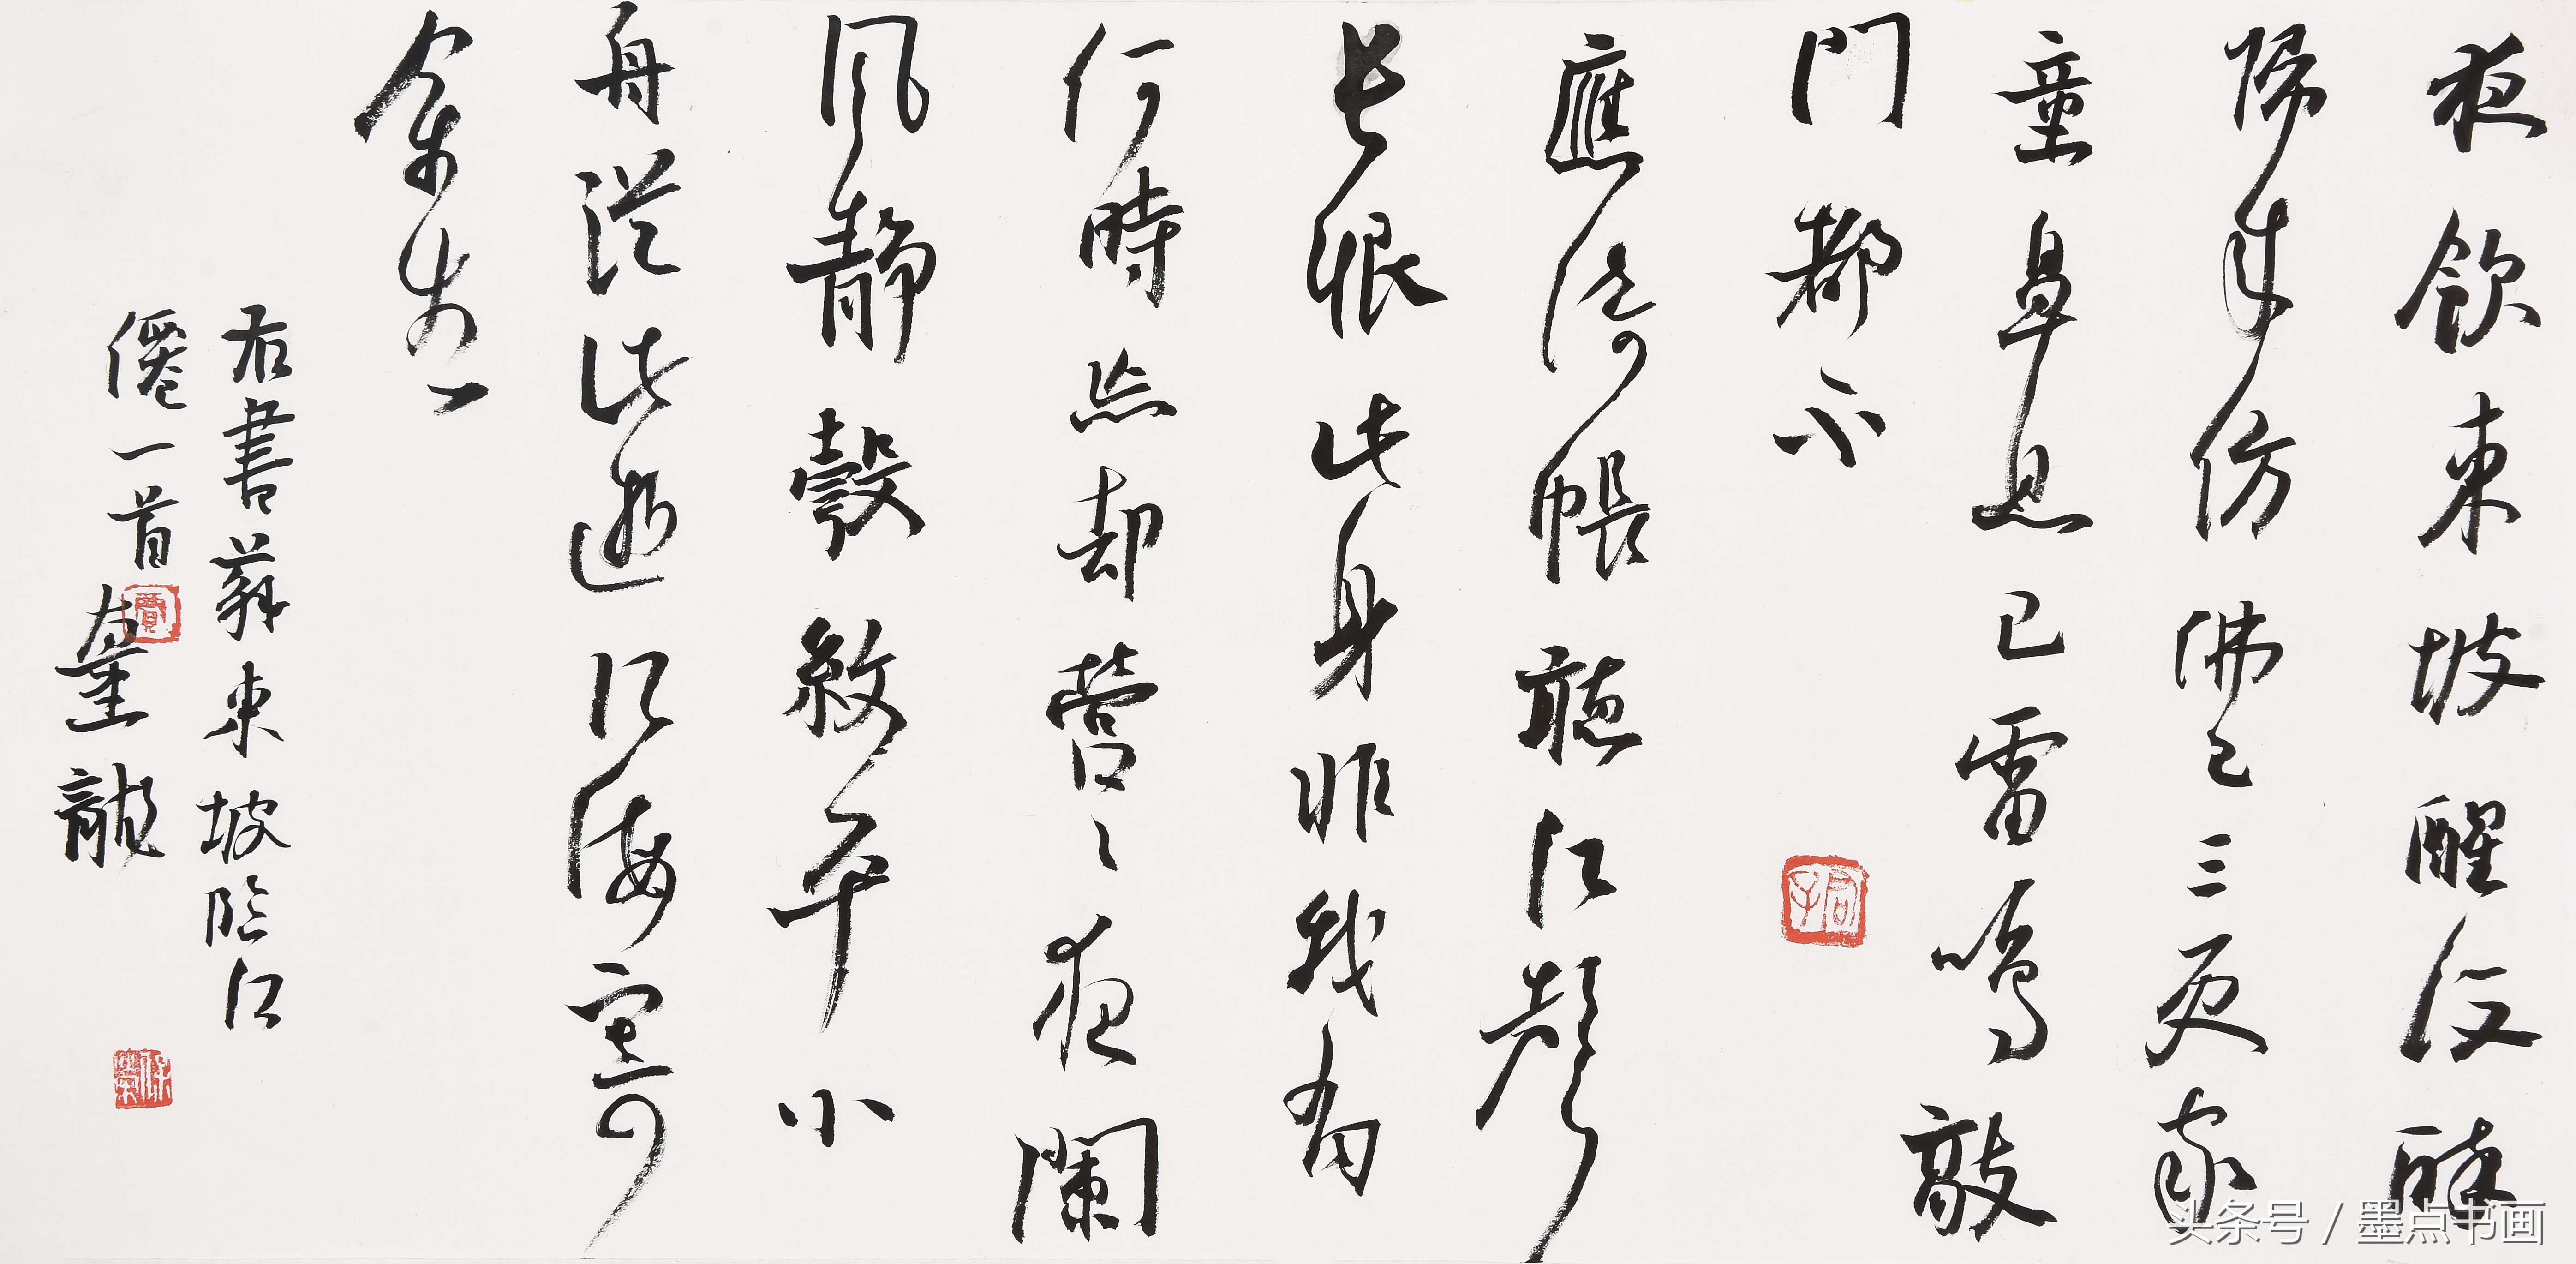 苏轼被称为东坡先生，多源于这首词 贾保荣行草书临江仙